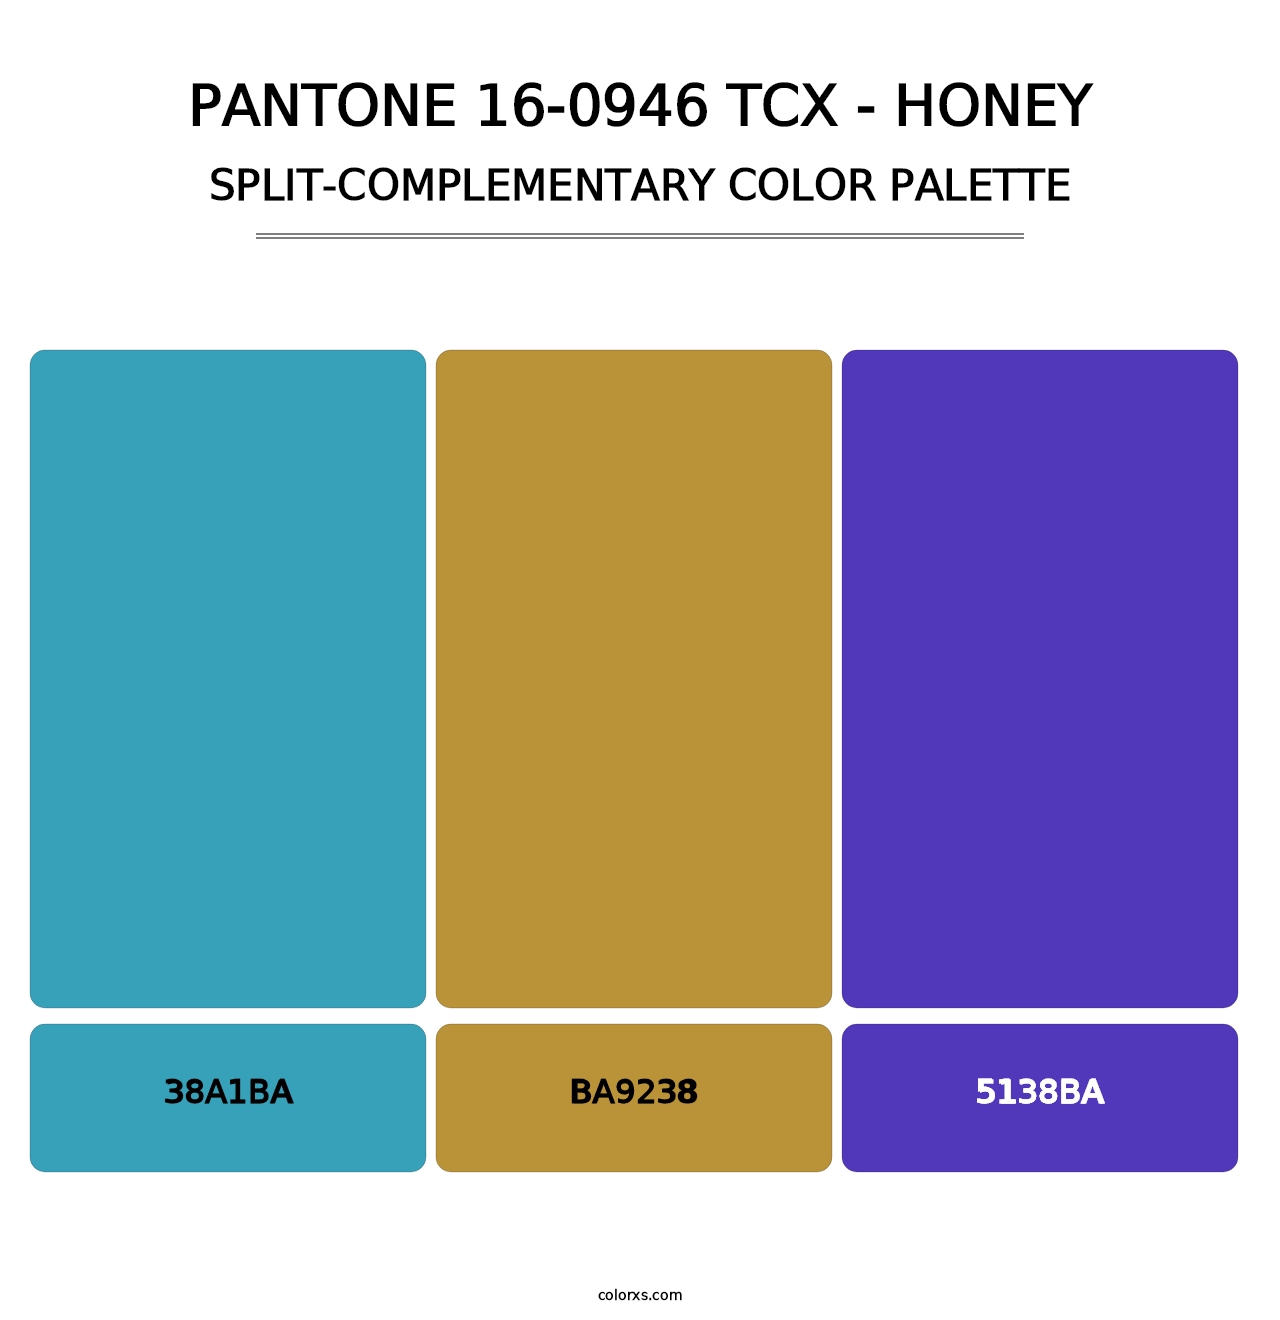 PANTONE 16-0946 TCX - Honey - Split-Complementary Color Palette